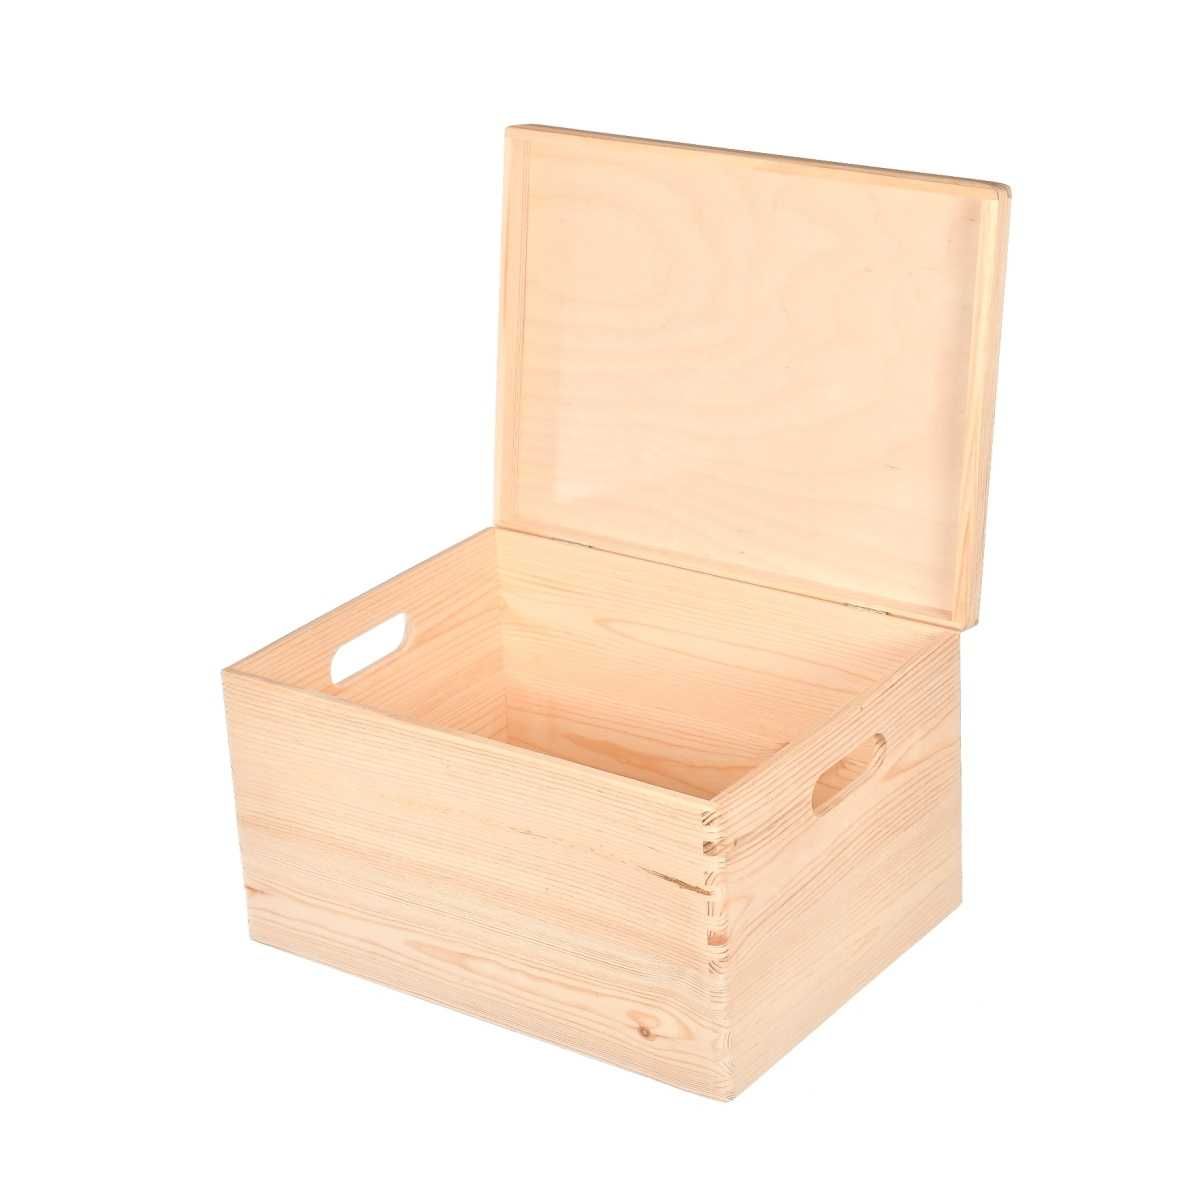 producent skrzynek i opakowań drewnianych pudełka na wymiar